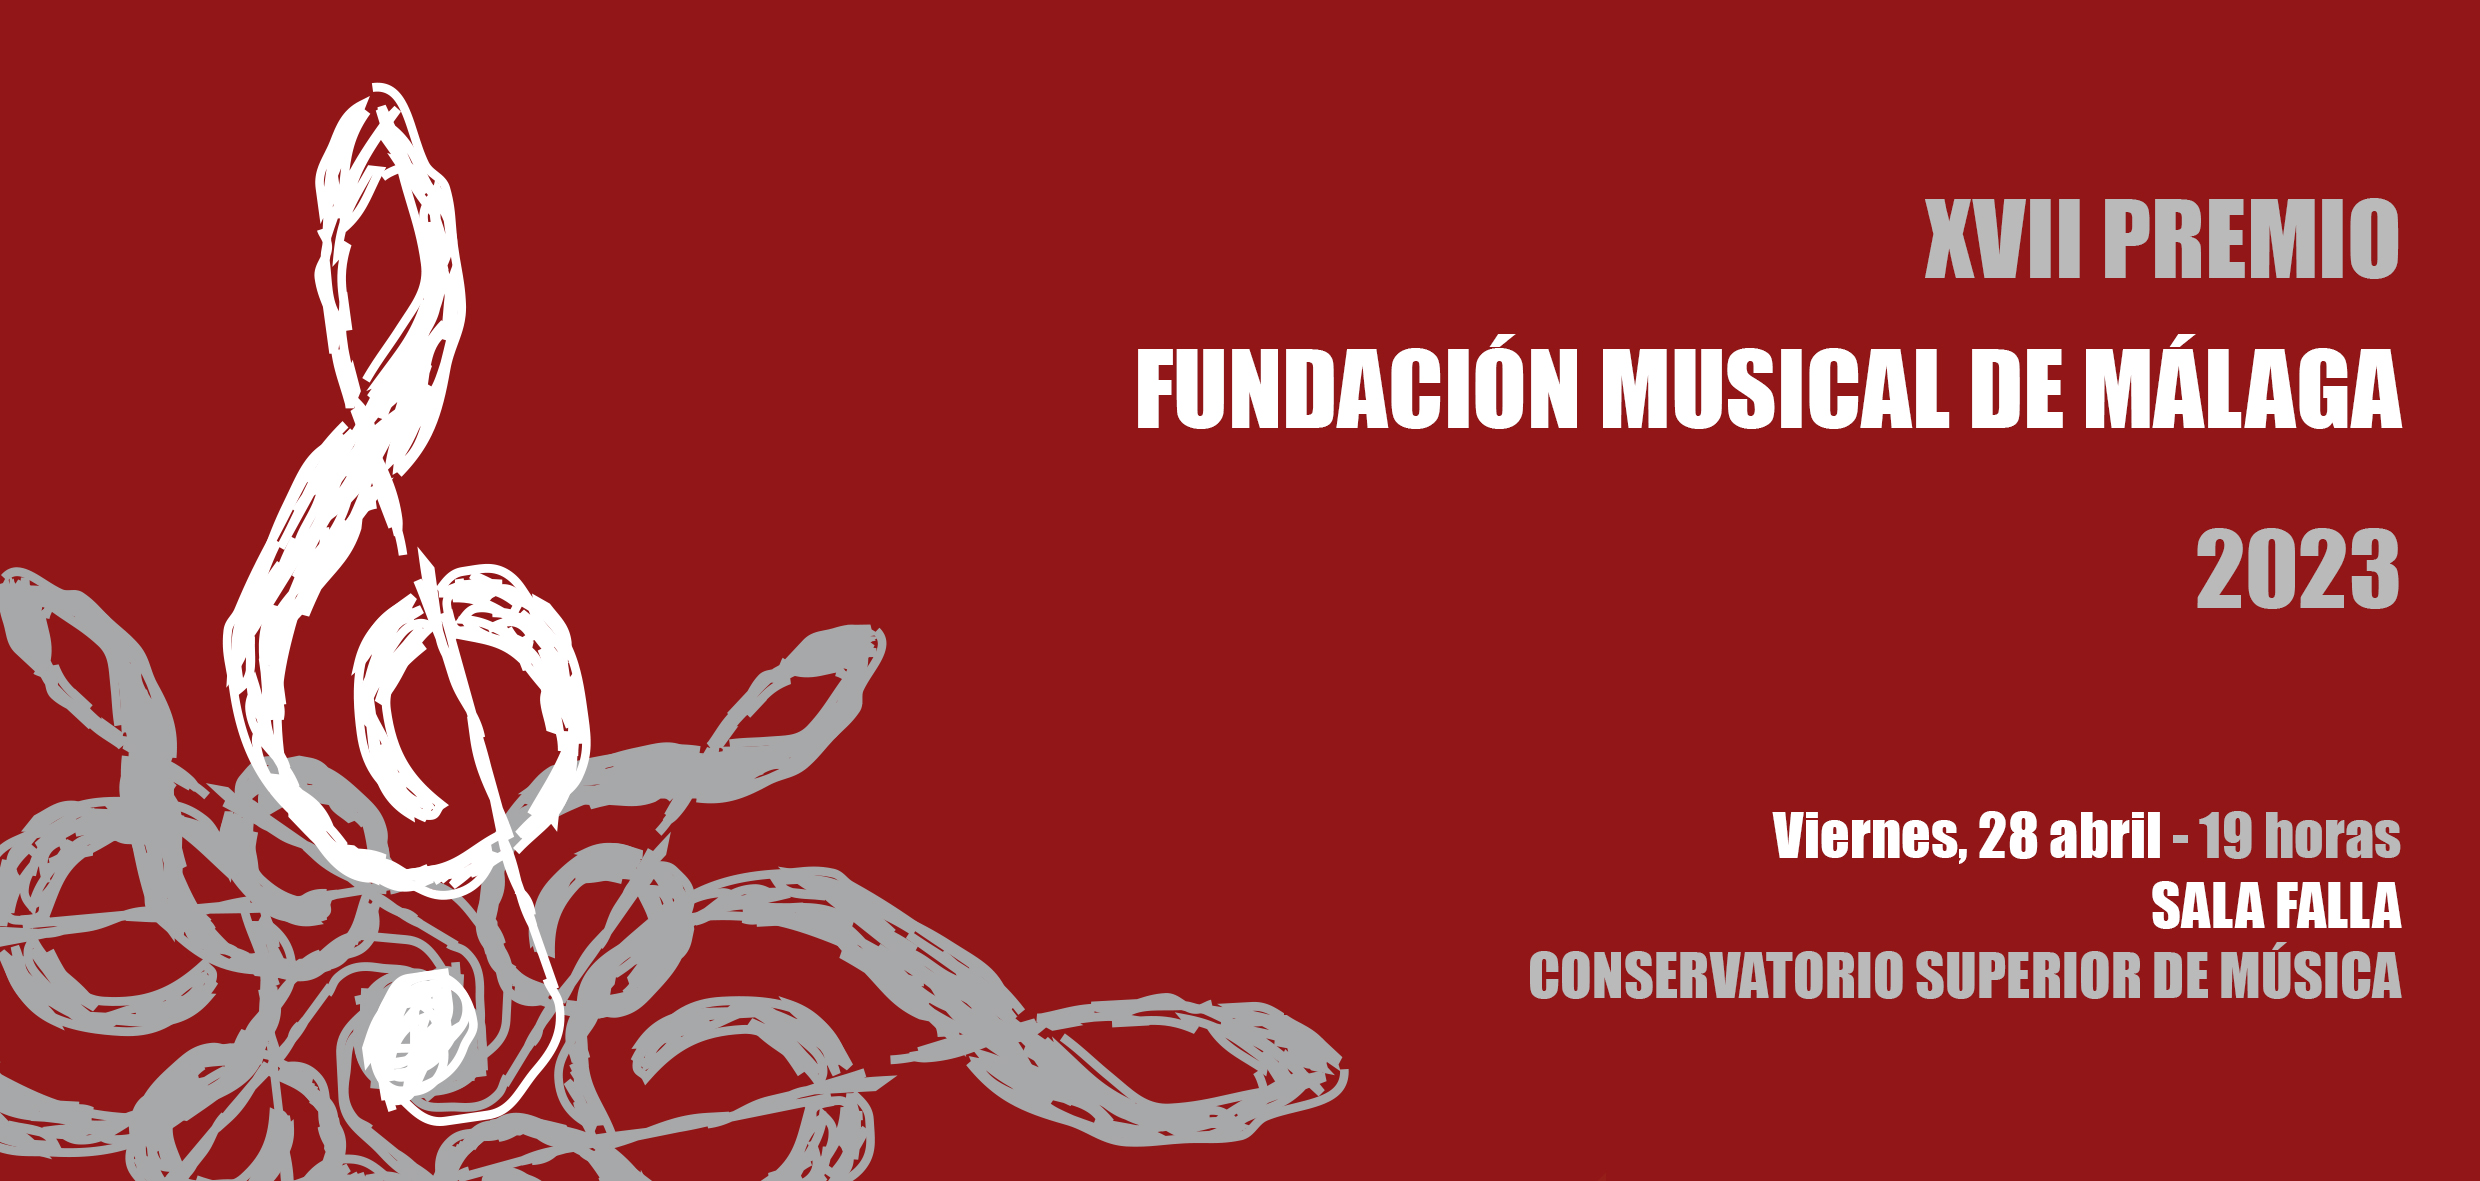 LA JOVEN GUITARRISTA MARÍA SIMÓN VILLEGAS GANADORA DEL XVII PREMIO FUNDACIÓN MUSICAL DE MÁLAGA 2023 (Abre en ventana nueva)